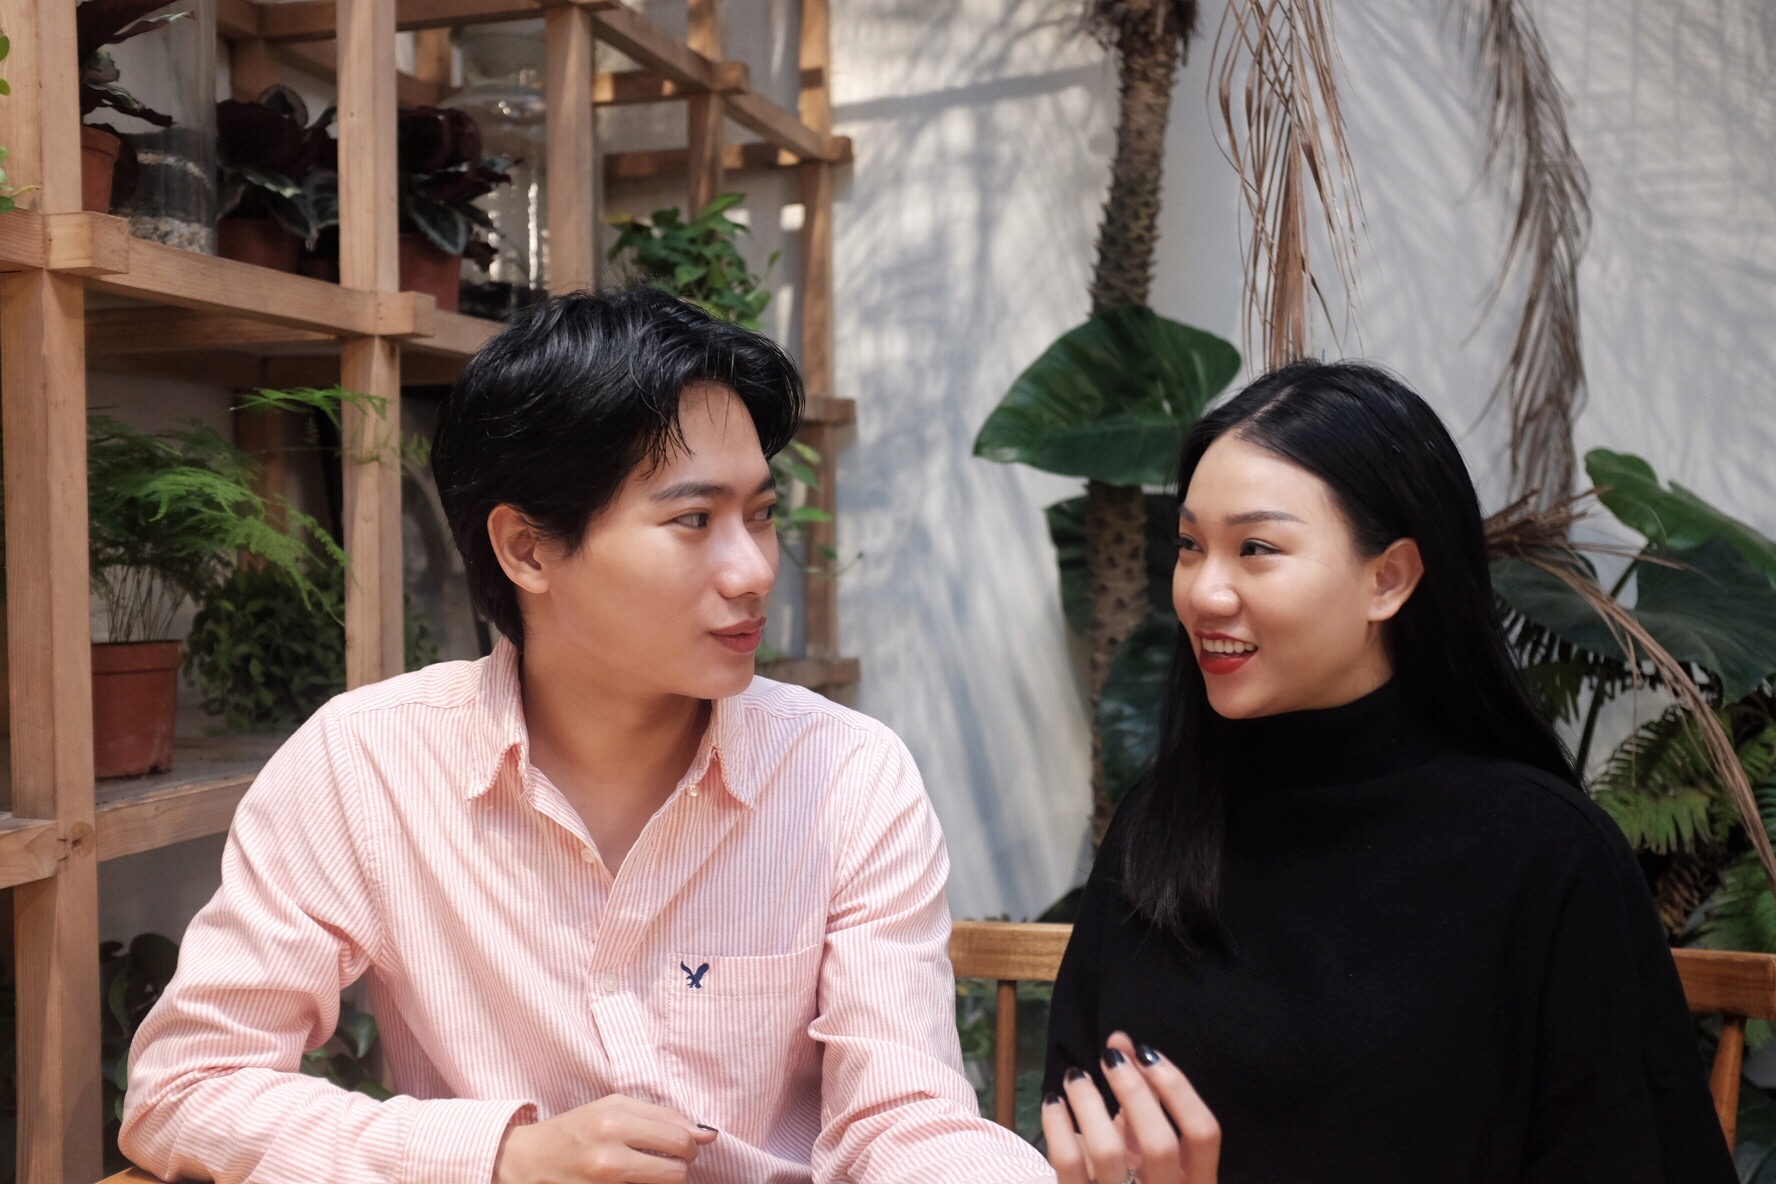 Đỗ Duy Khánh và Đinh Phương Anh - 2 founder của startup Skinlosophy.